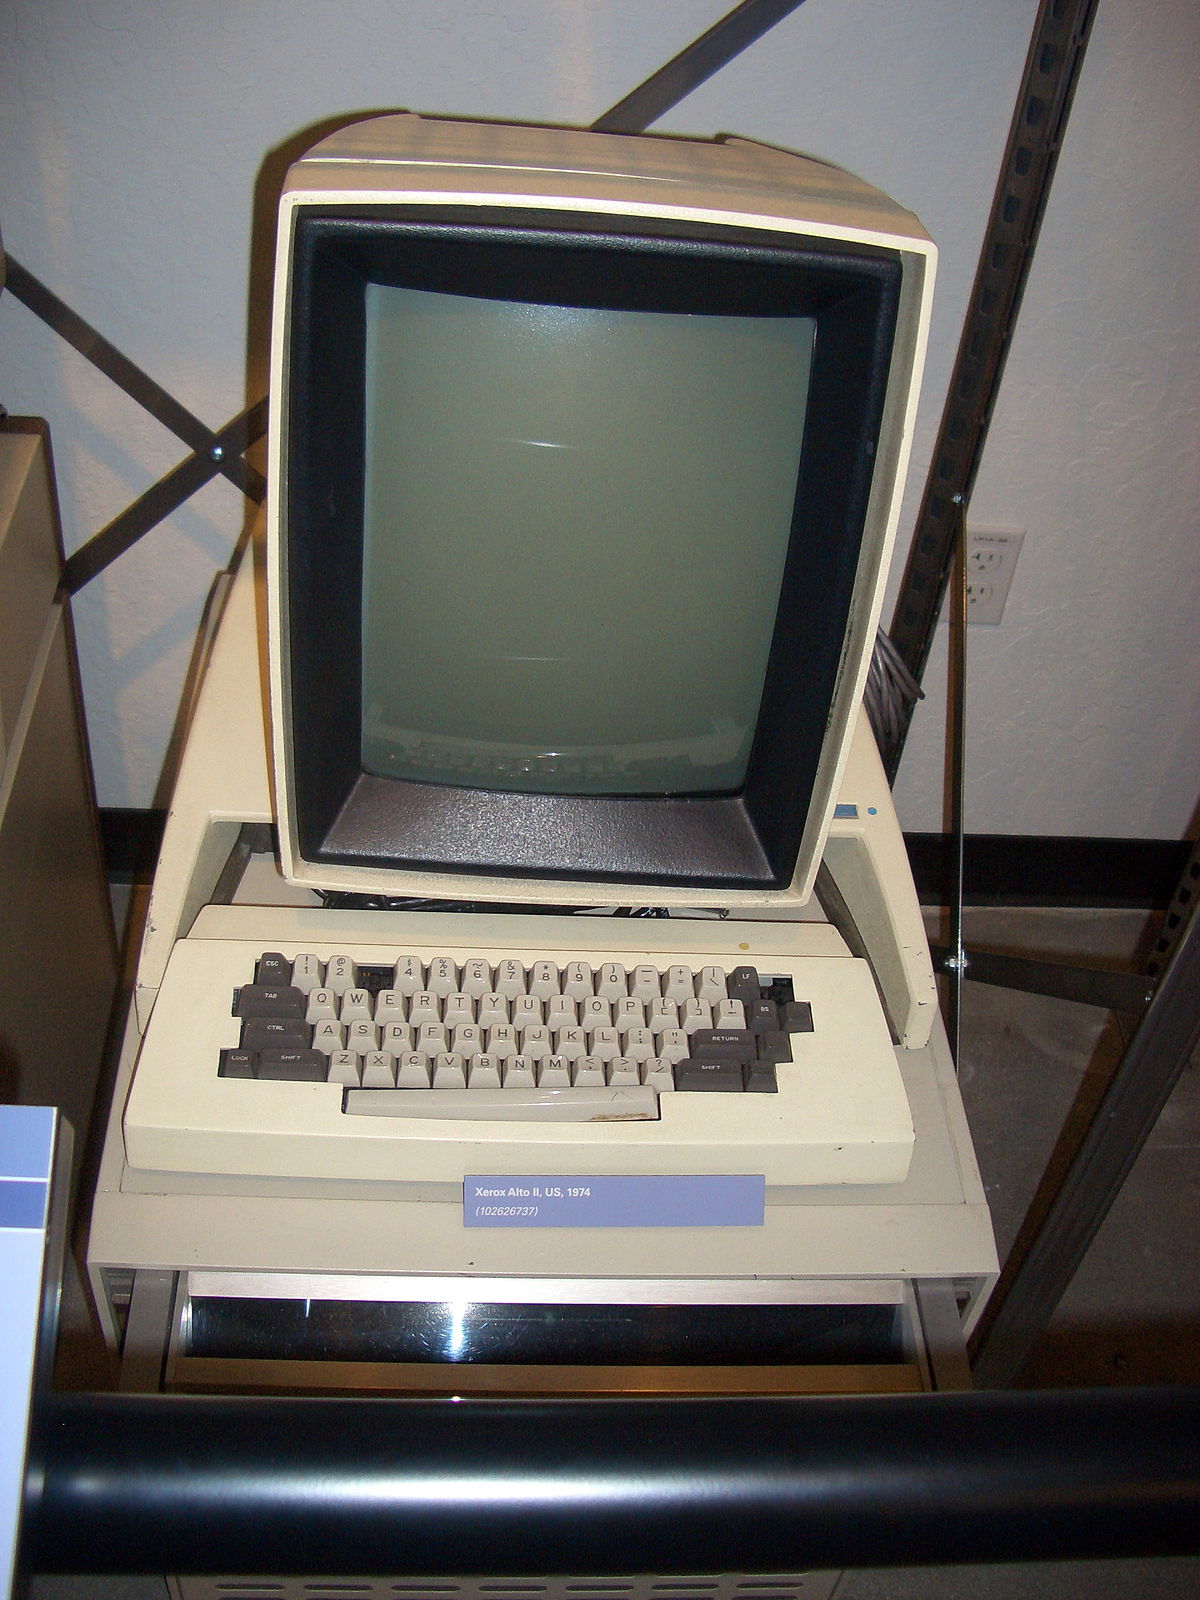  Xerox komputer